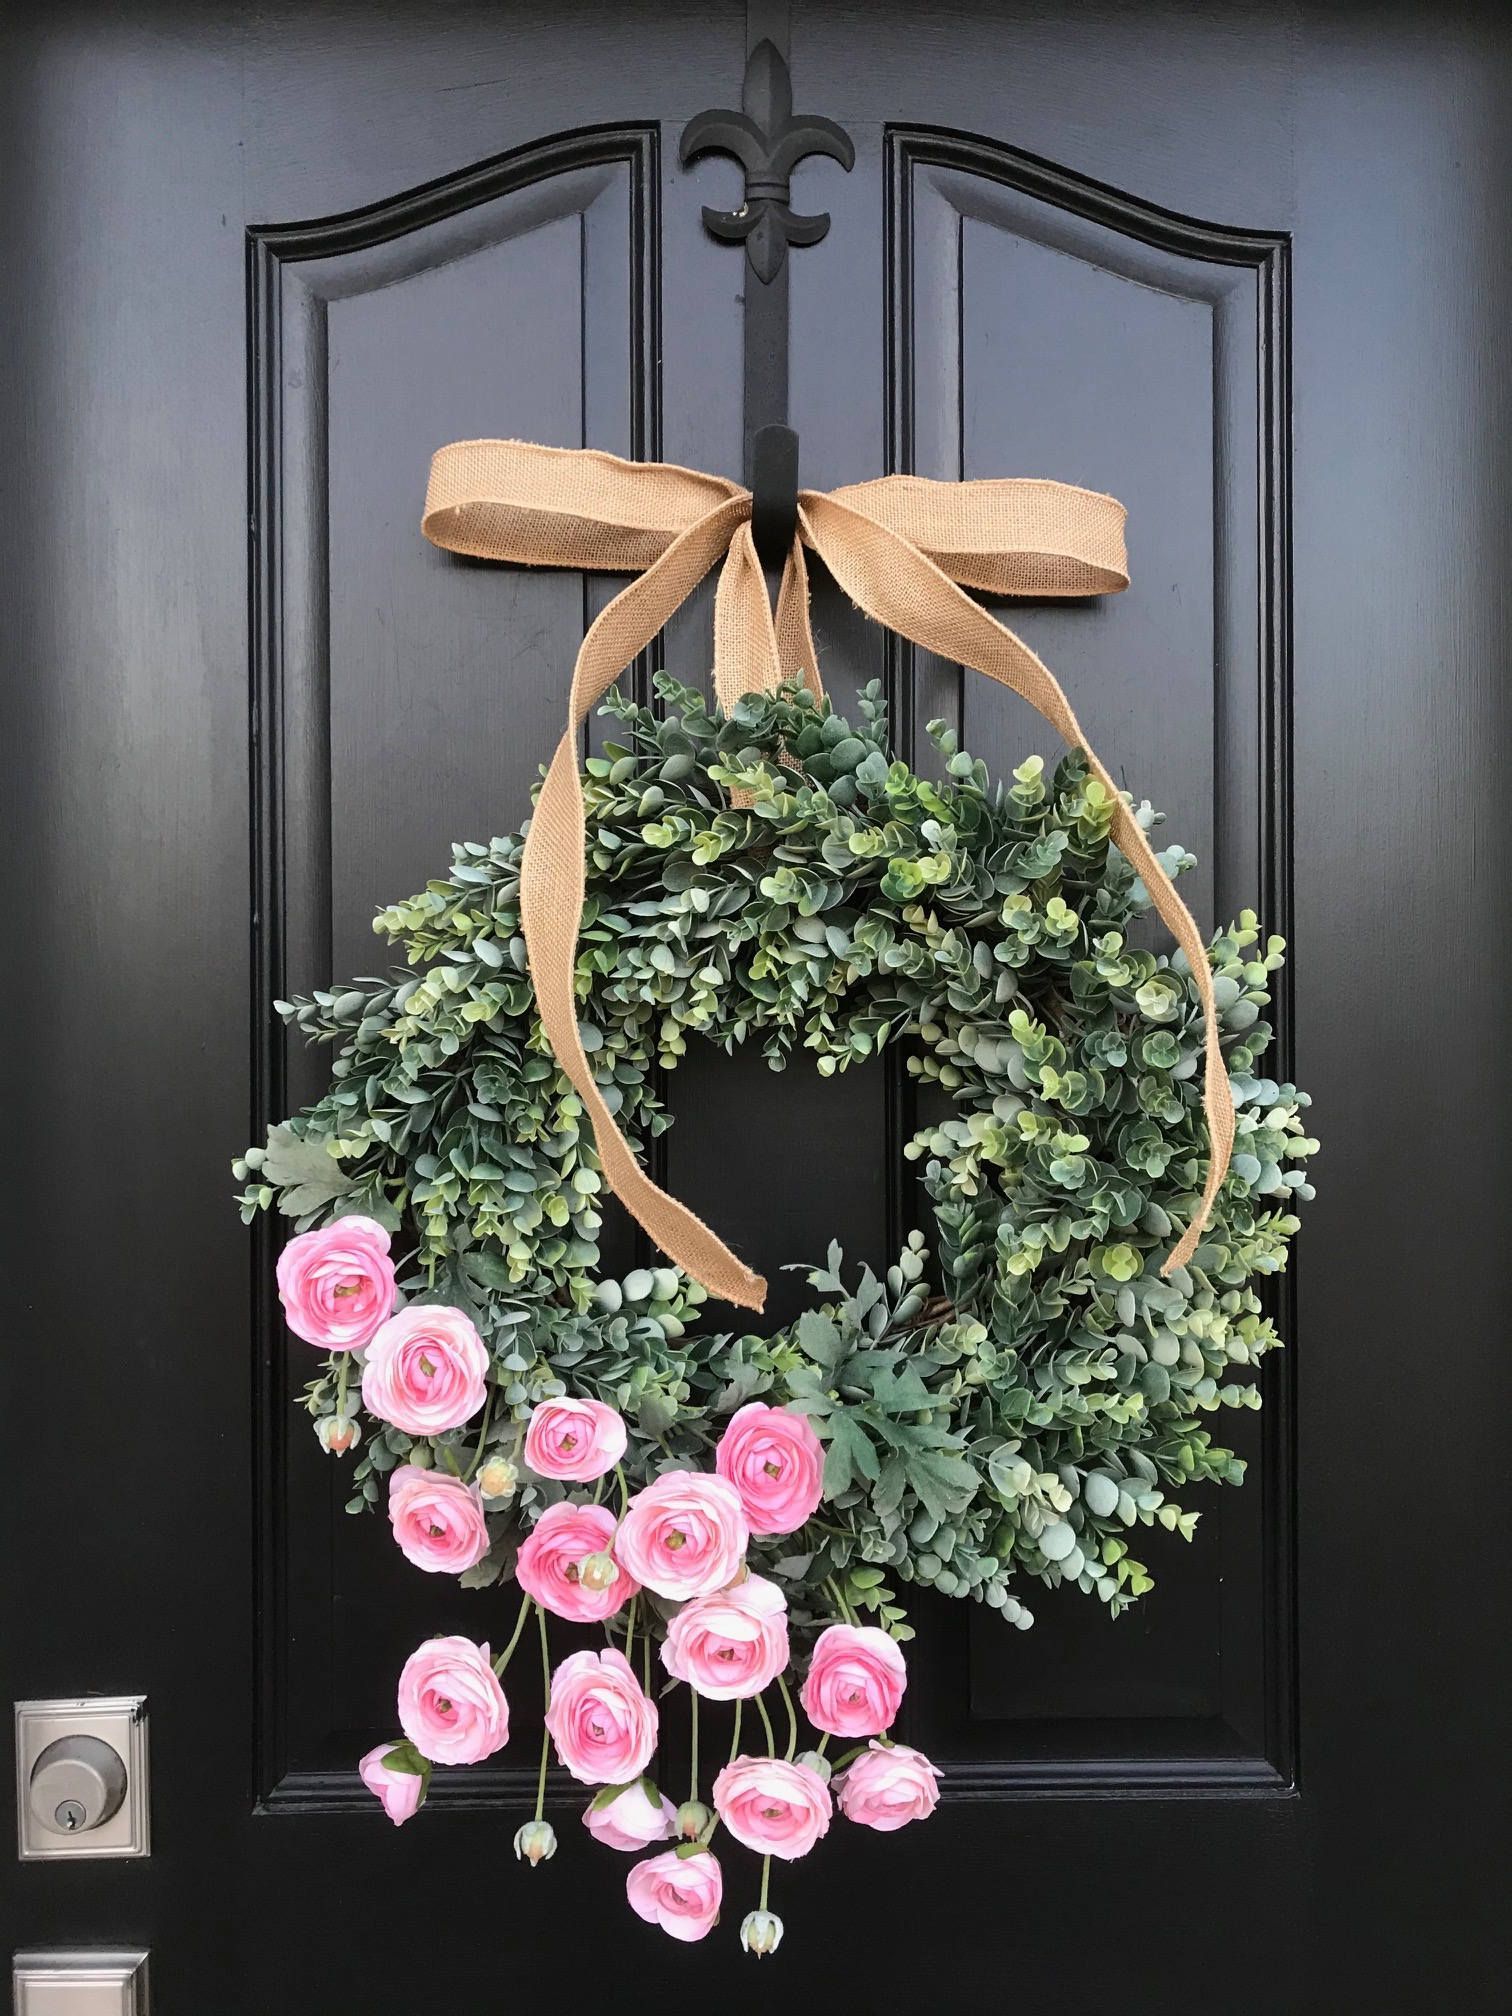 Hanging Metal Artisannal Daisy Blue Flower Welcome Wall Art Decor Door Wreaths 